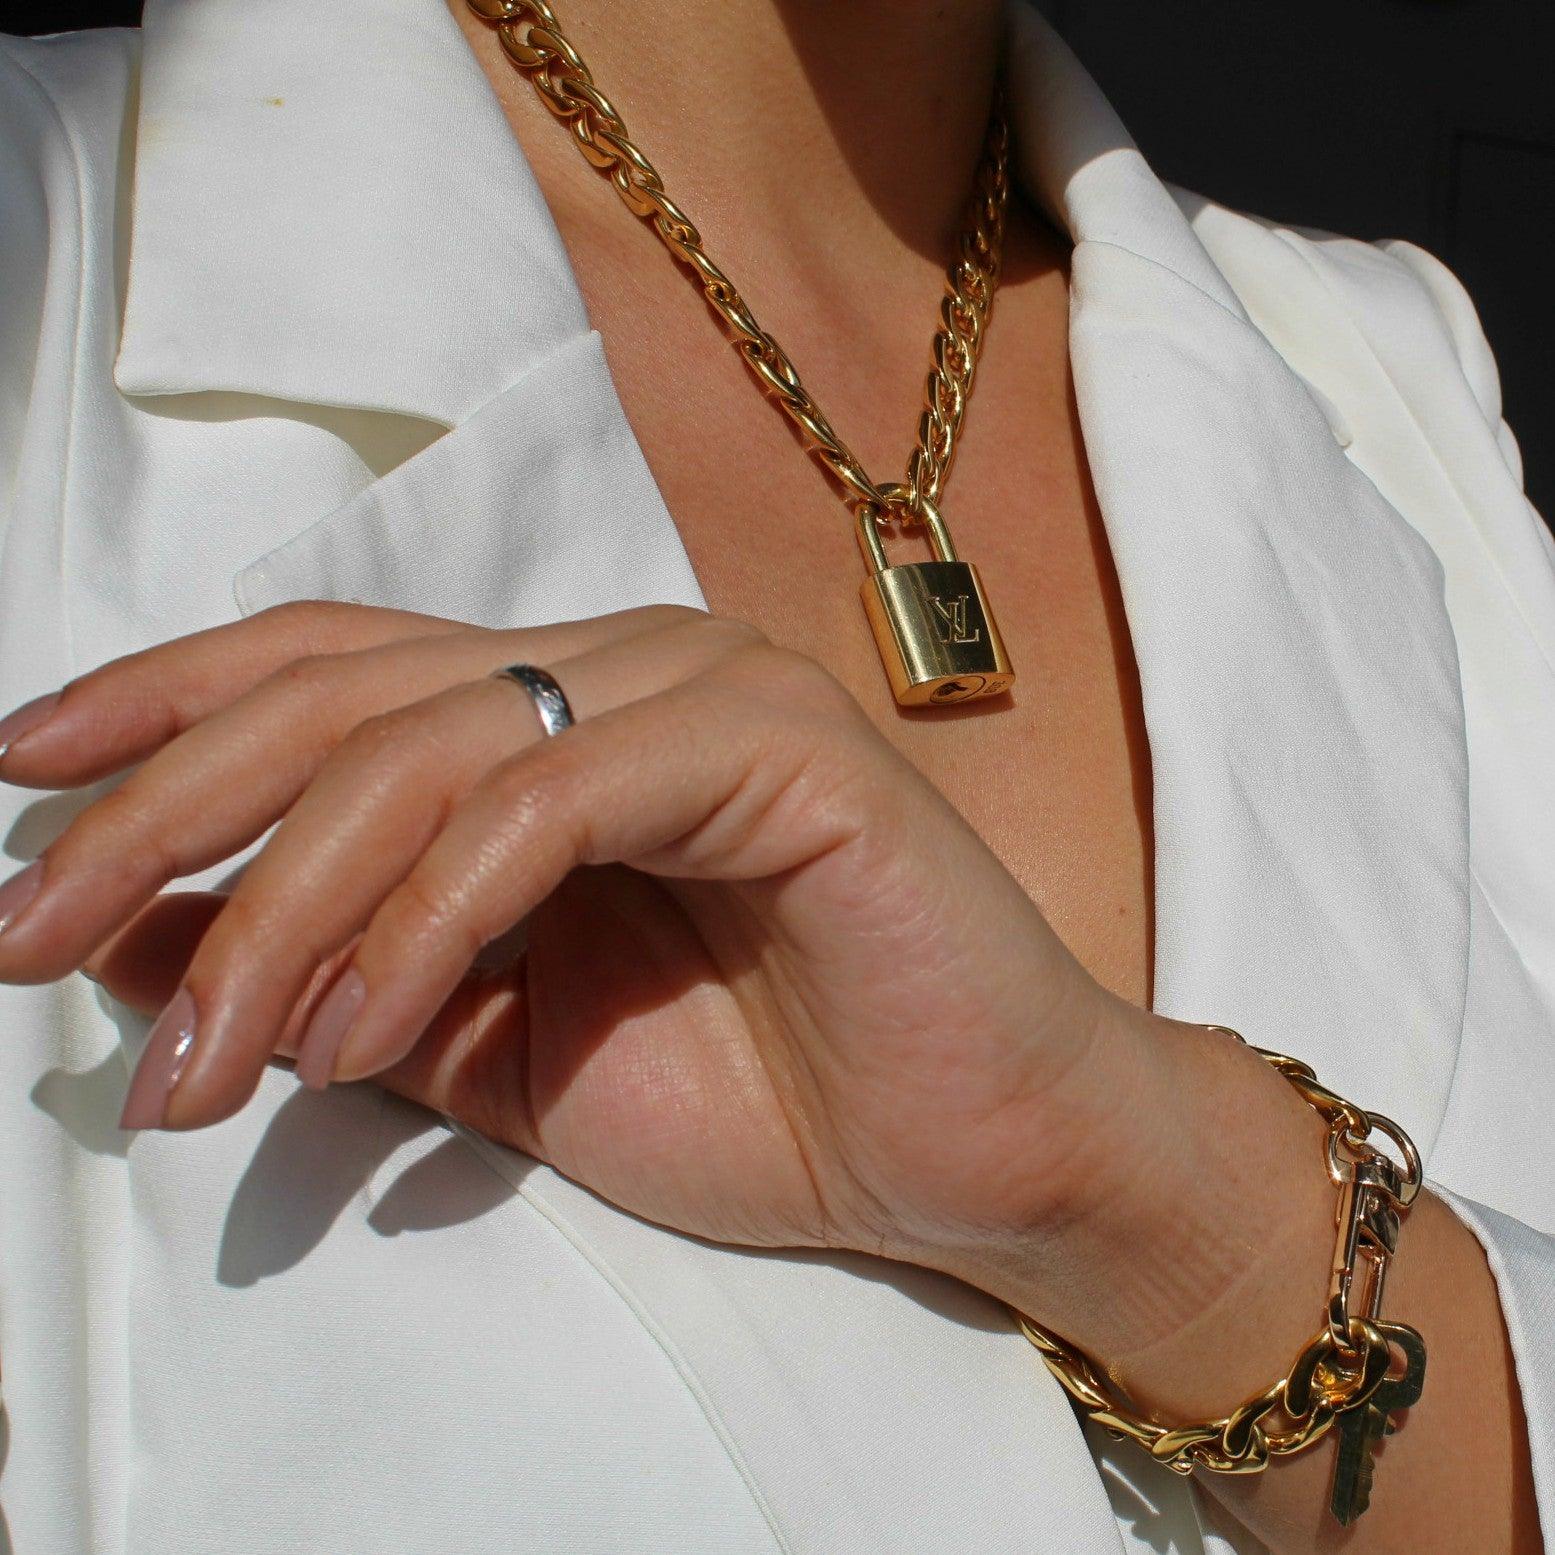 Louis Vuitton engraved key necklace – Secondlifejewels